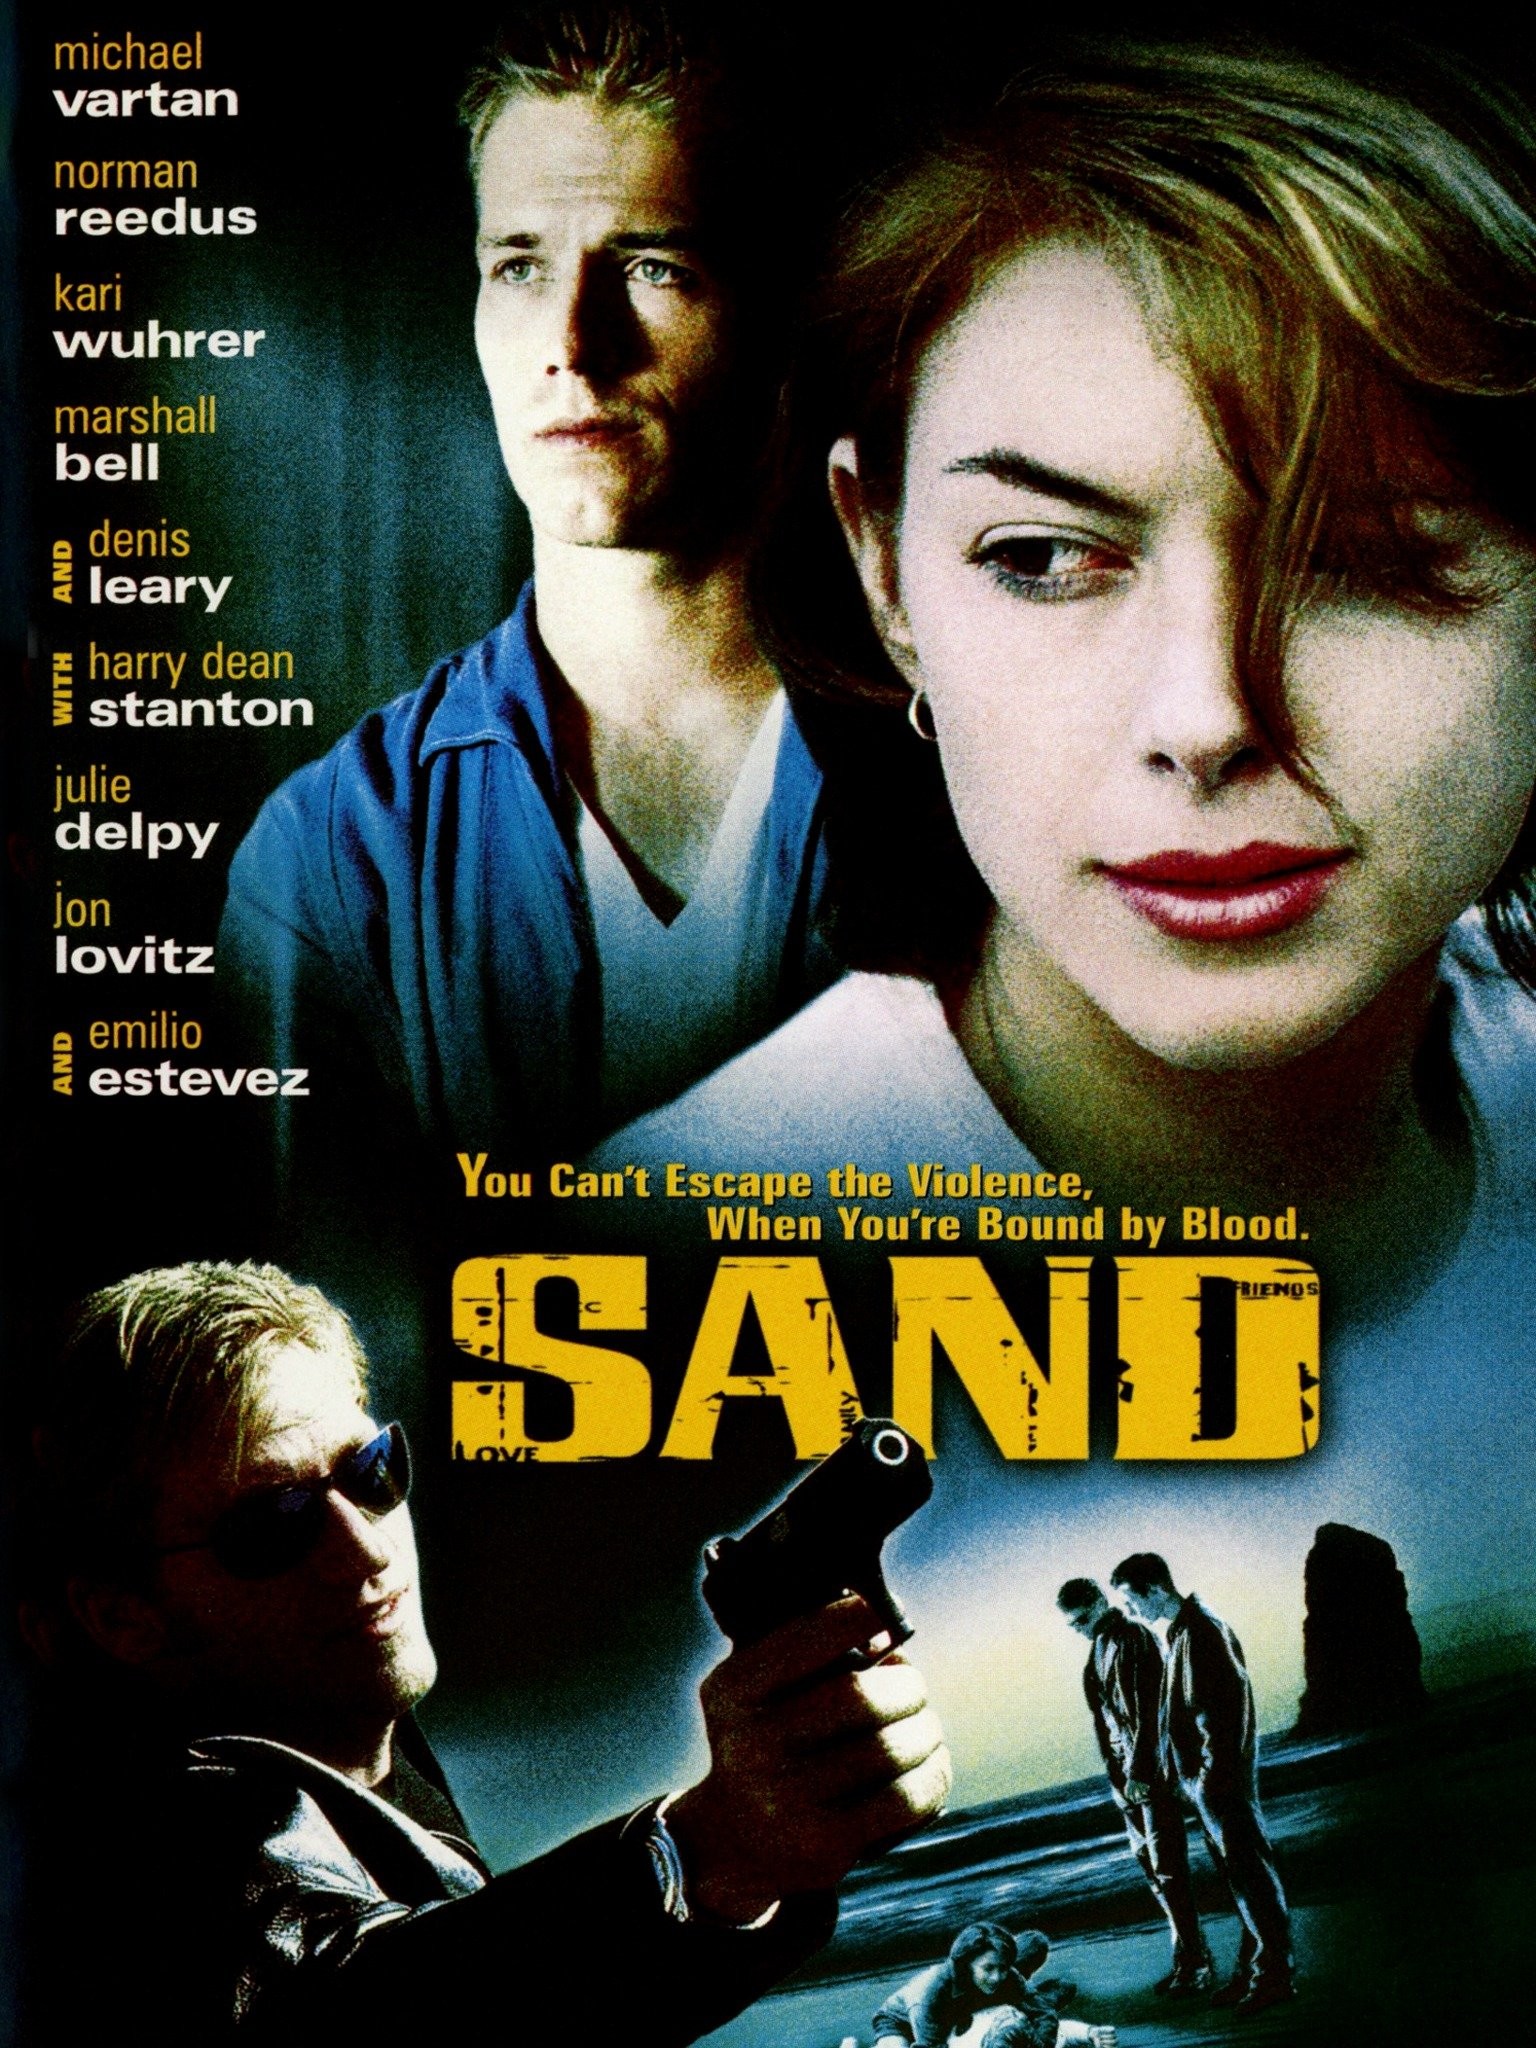 Sand Dollars - Rotten Tomatoes